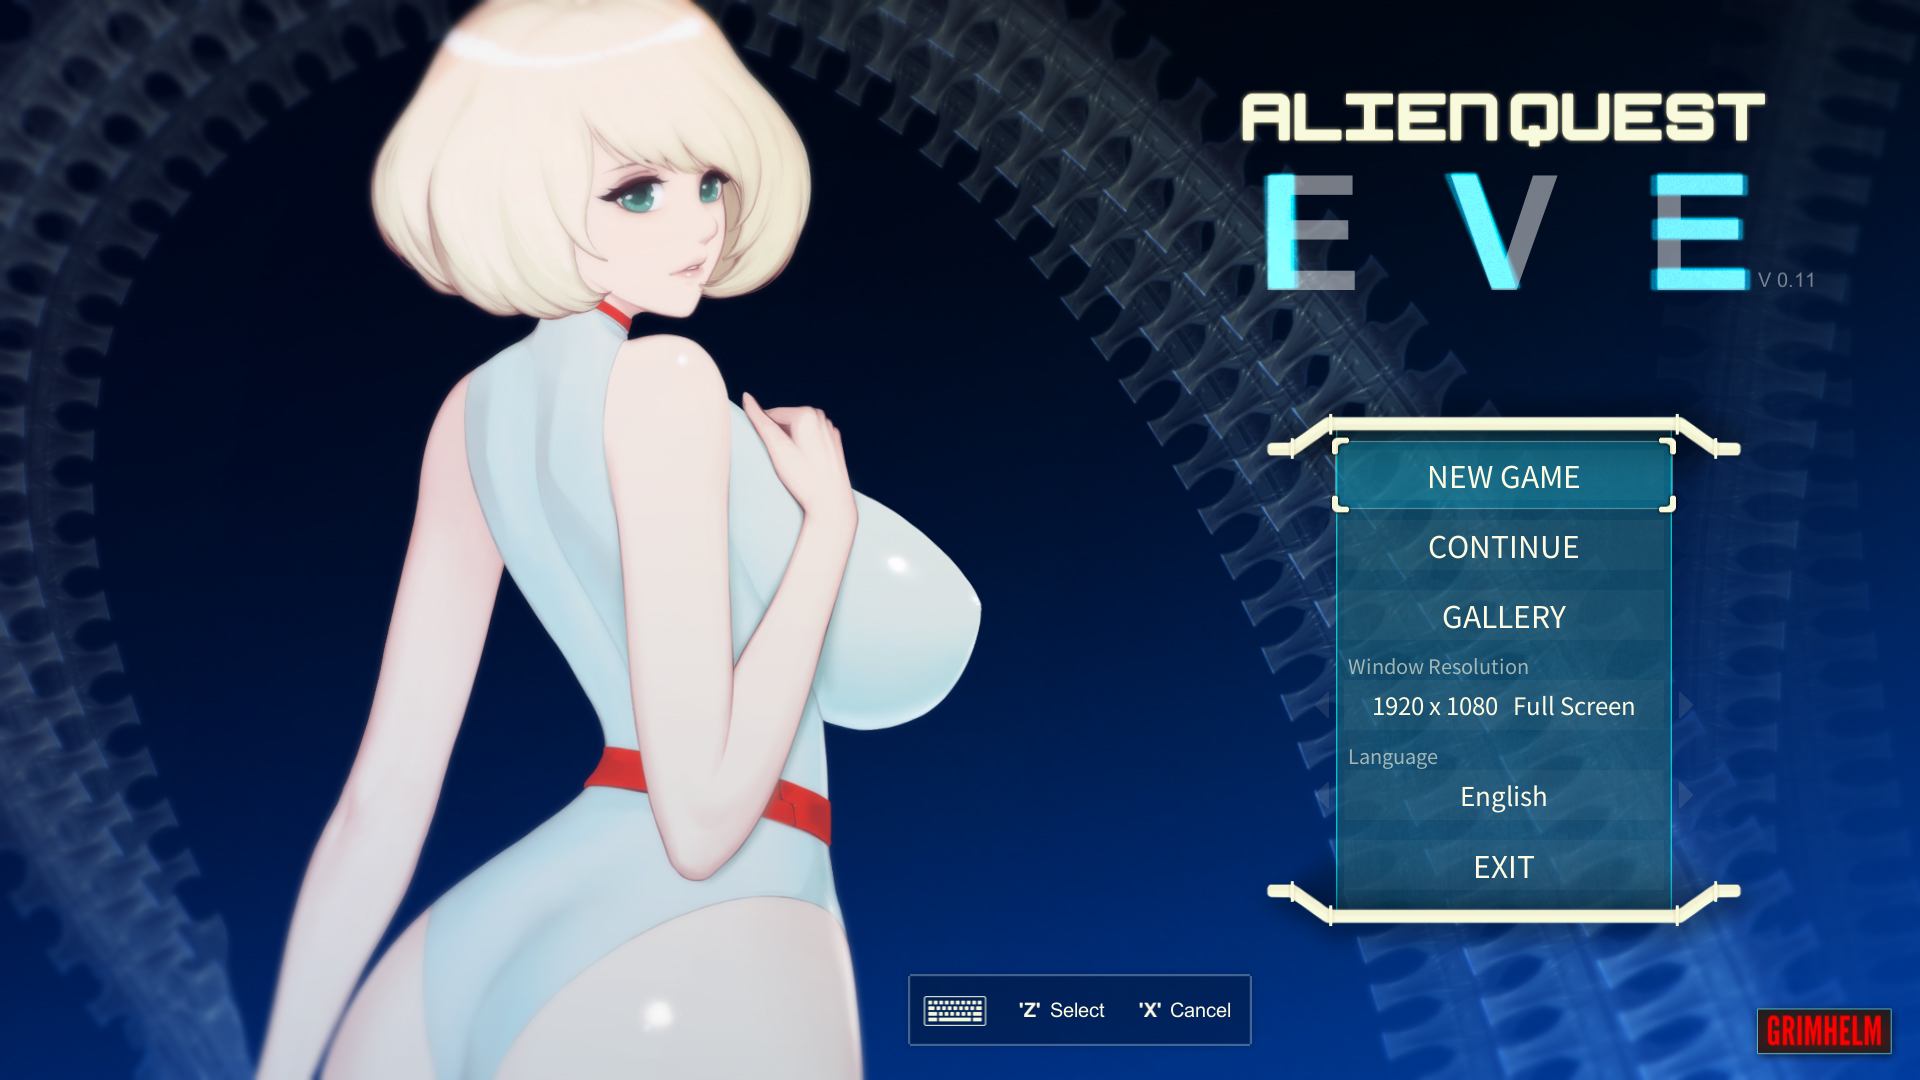 Alien Quest Eve [Grimhelm] Adult xxx Game Download